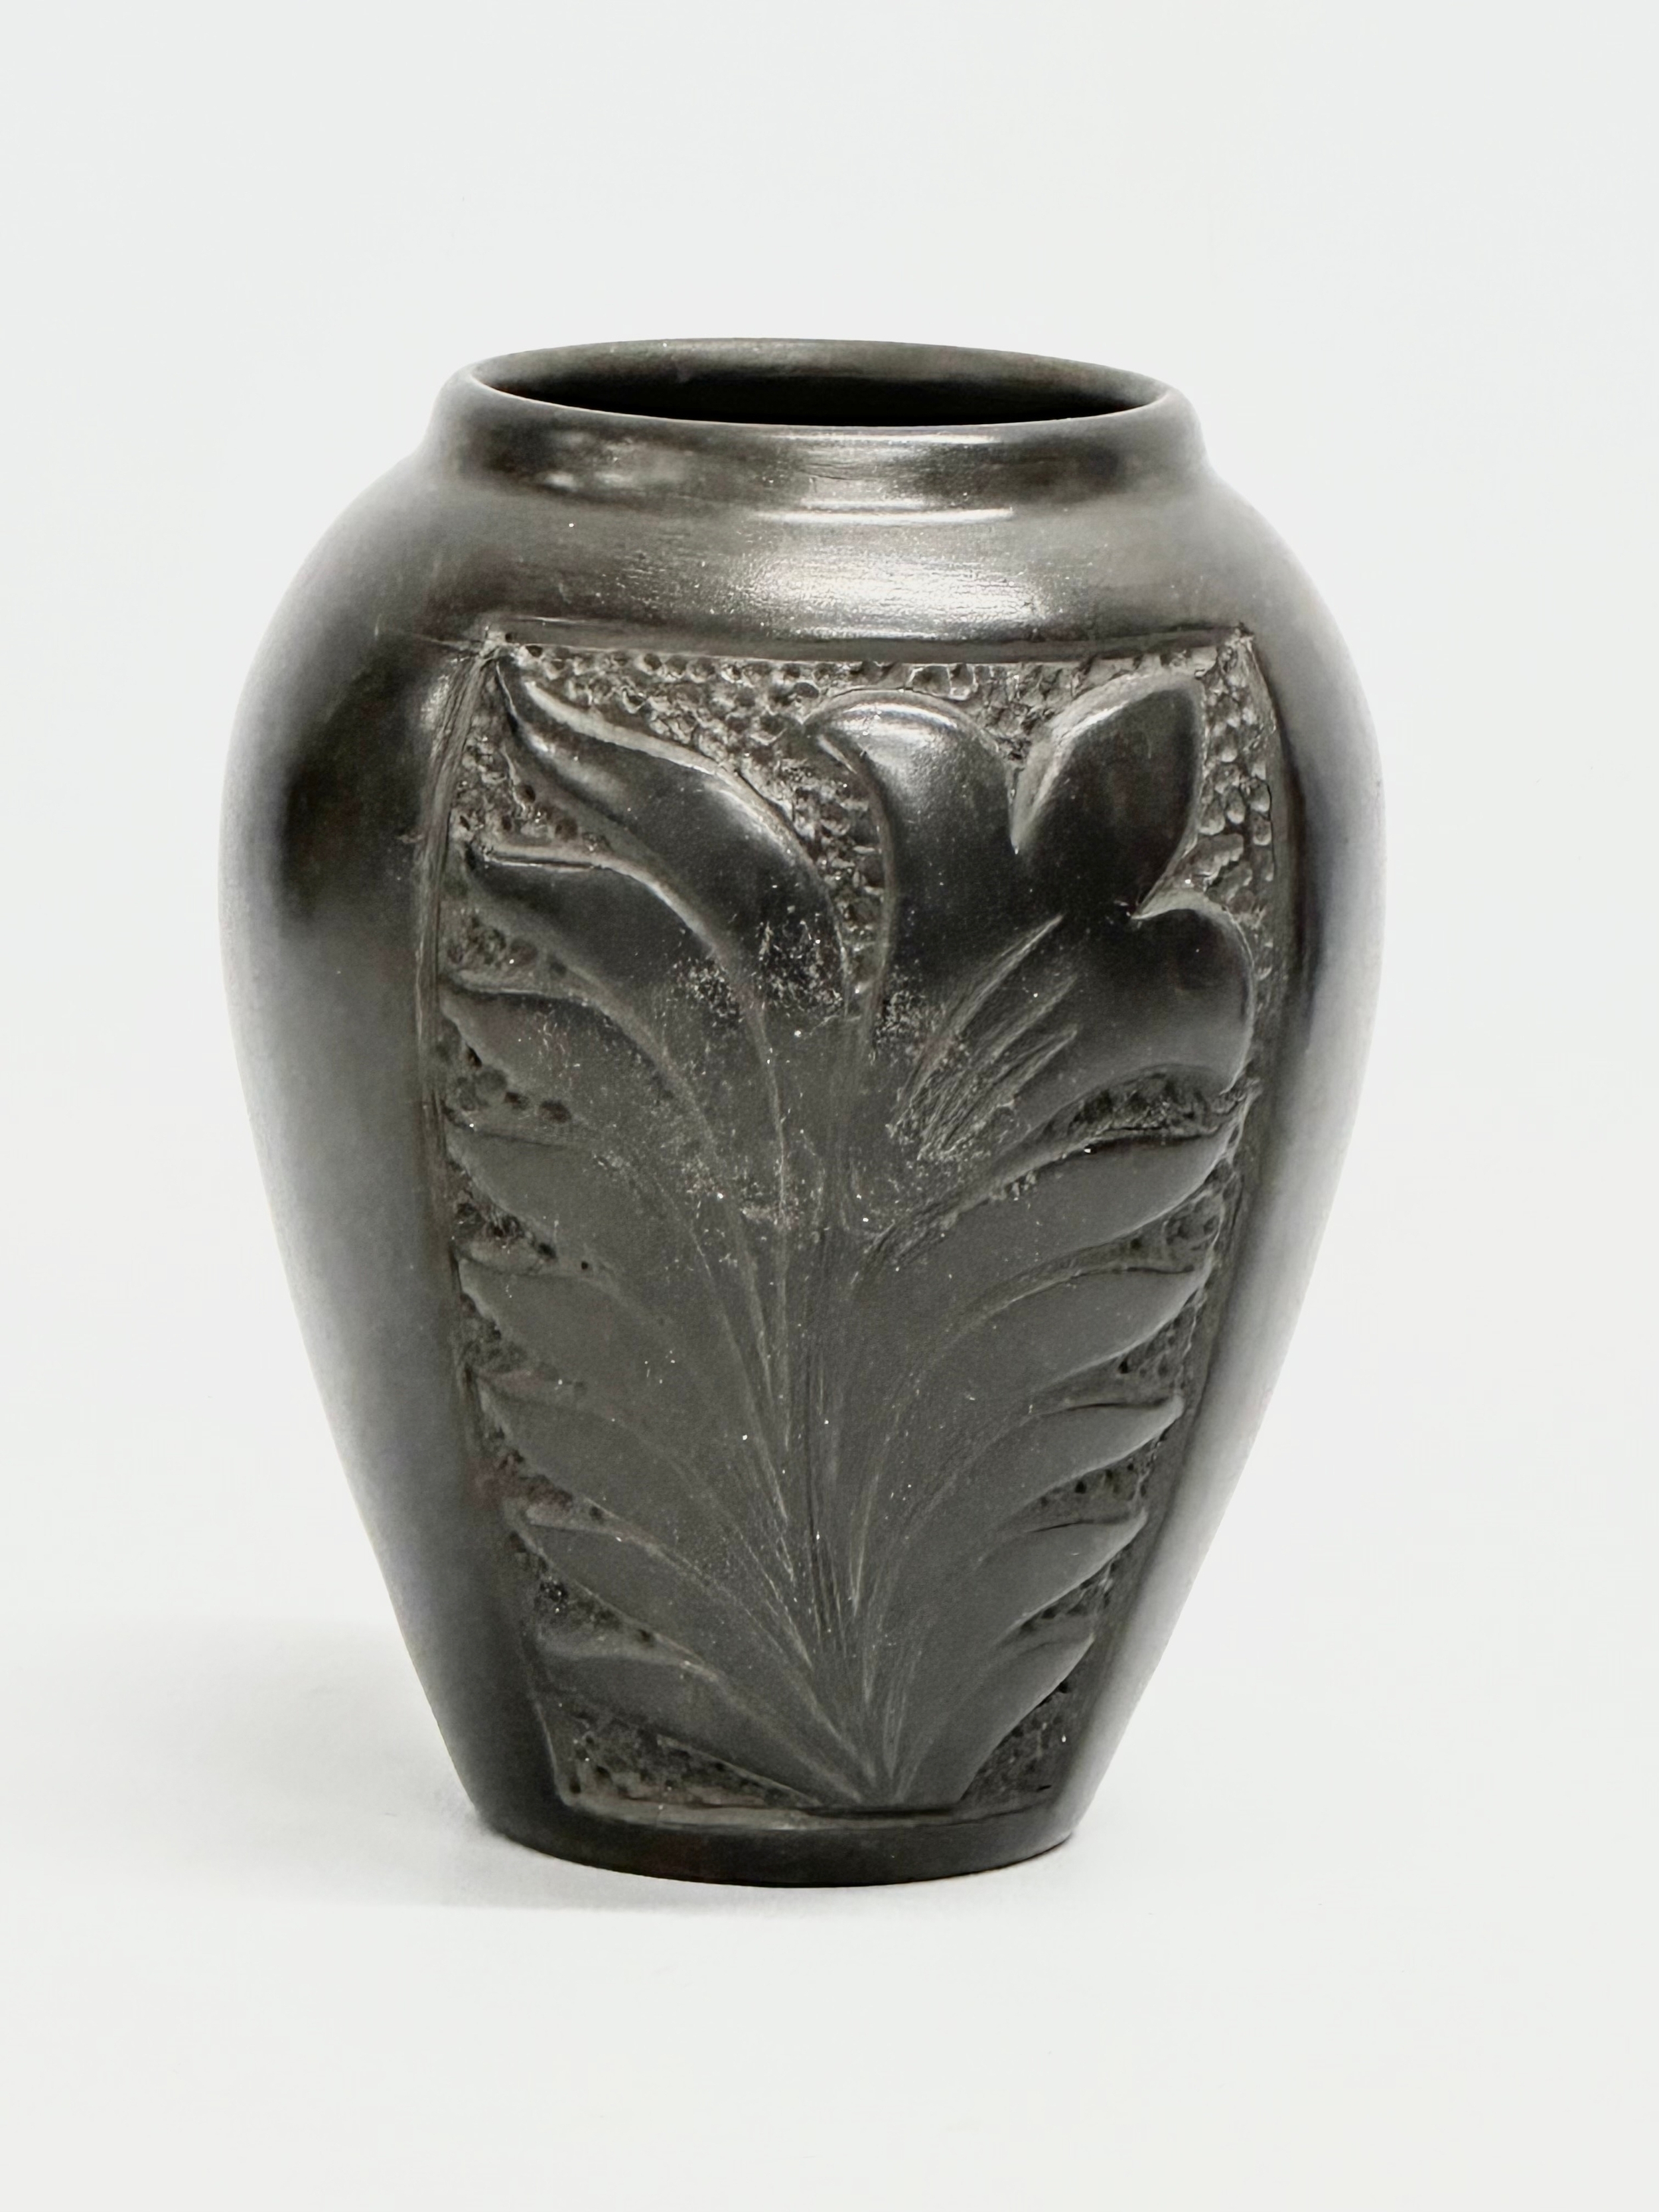 A black glazed ceramic pot by Marginea. 10x14cm